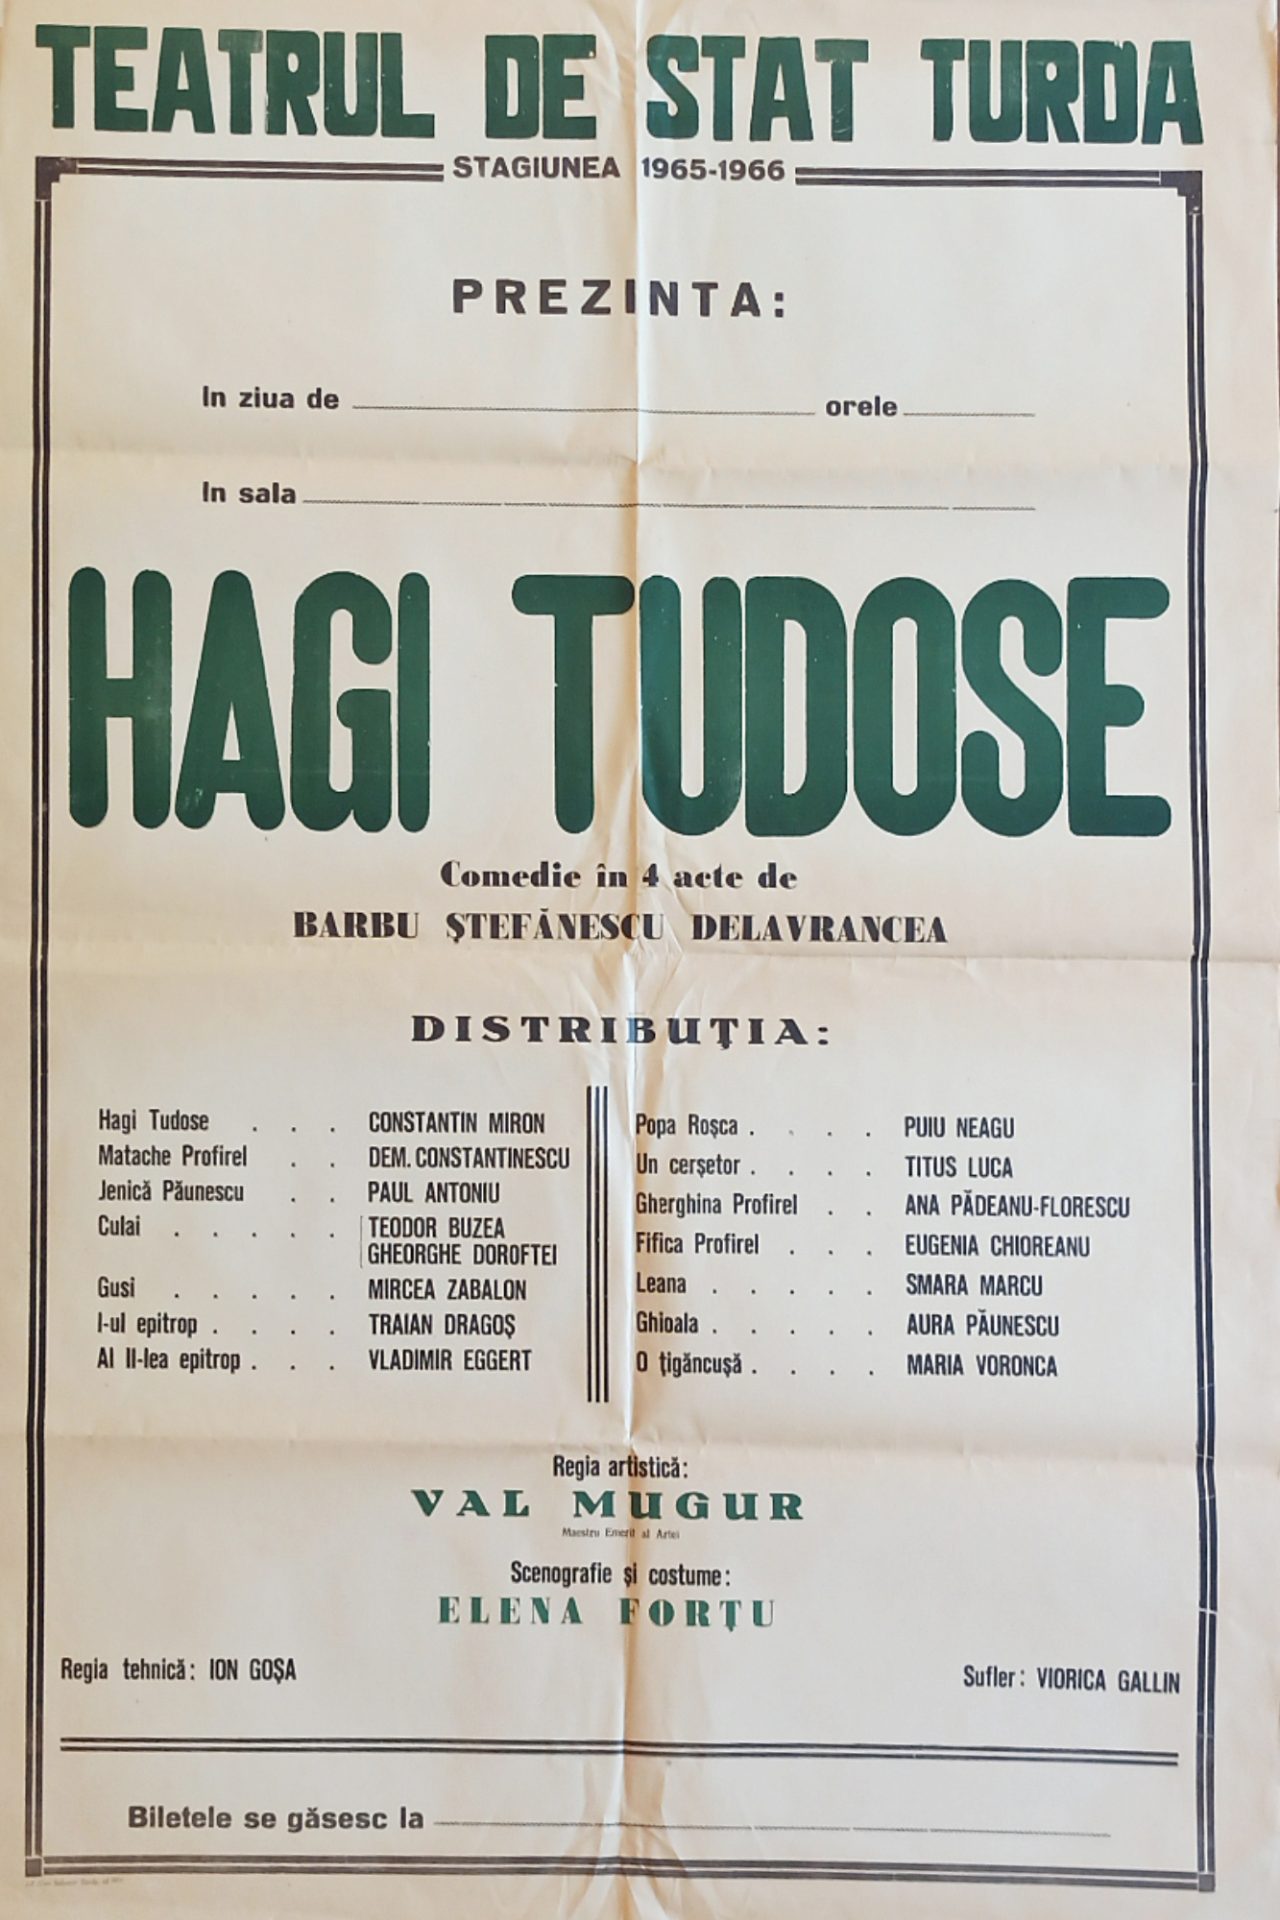 COPERTA-HAGI TUDOSE, 1965-1966 – Copie